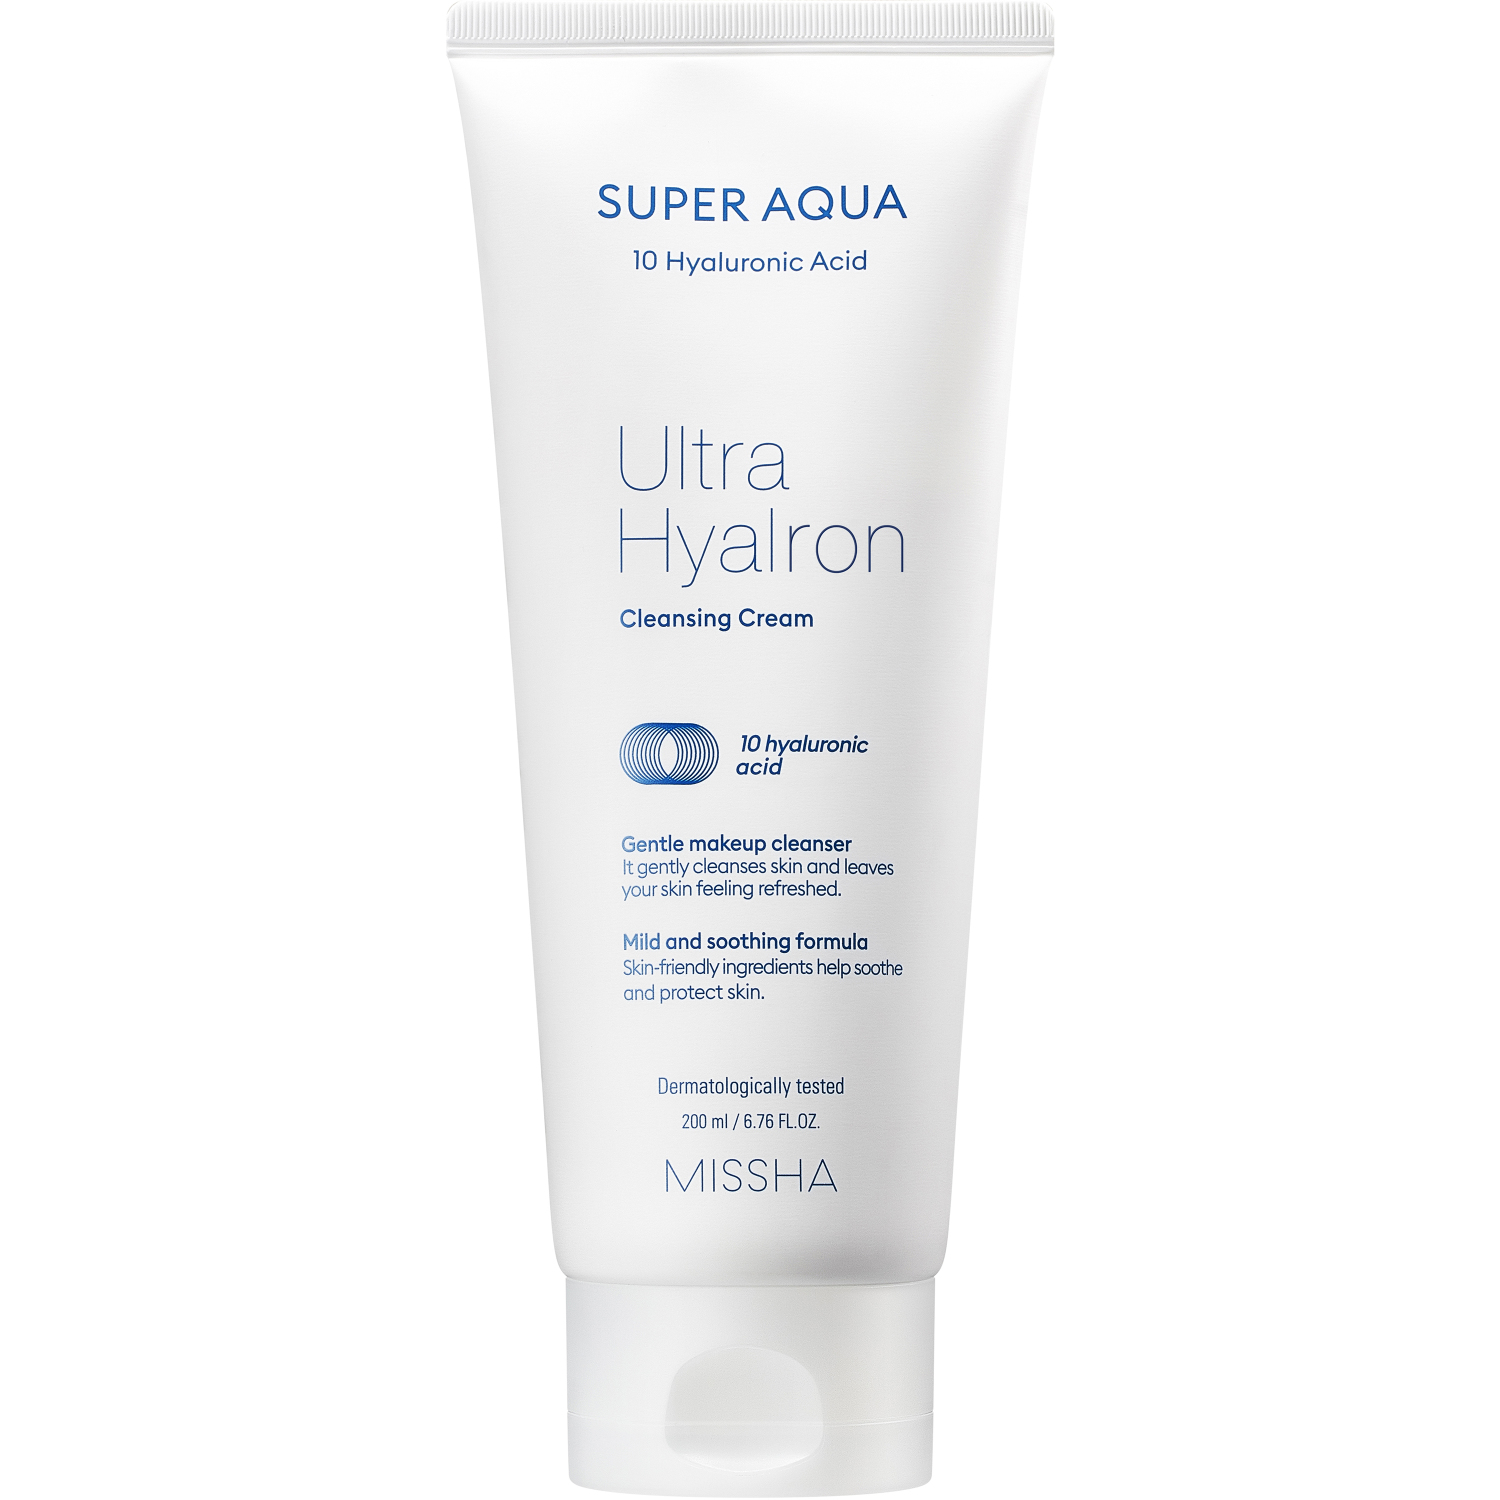 Пенка кремовая Missha Super Aqua Ultra Hyalron для умывания и снятия макияжа, 200 мл пенка для умывания images с муцином улитки 100 мл